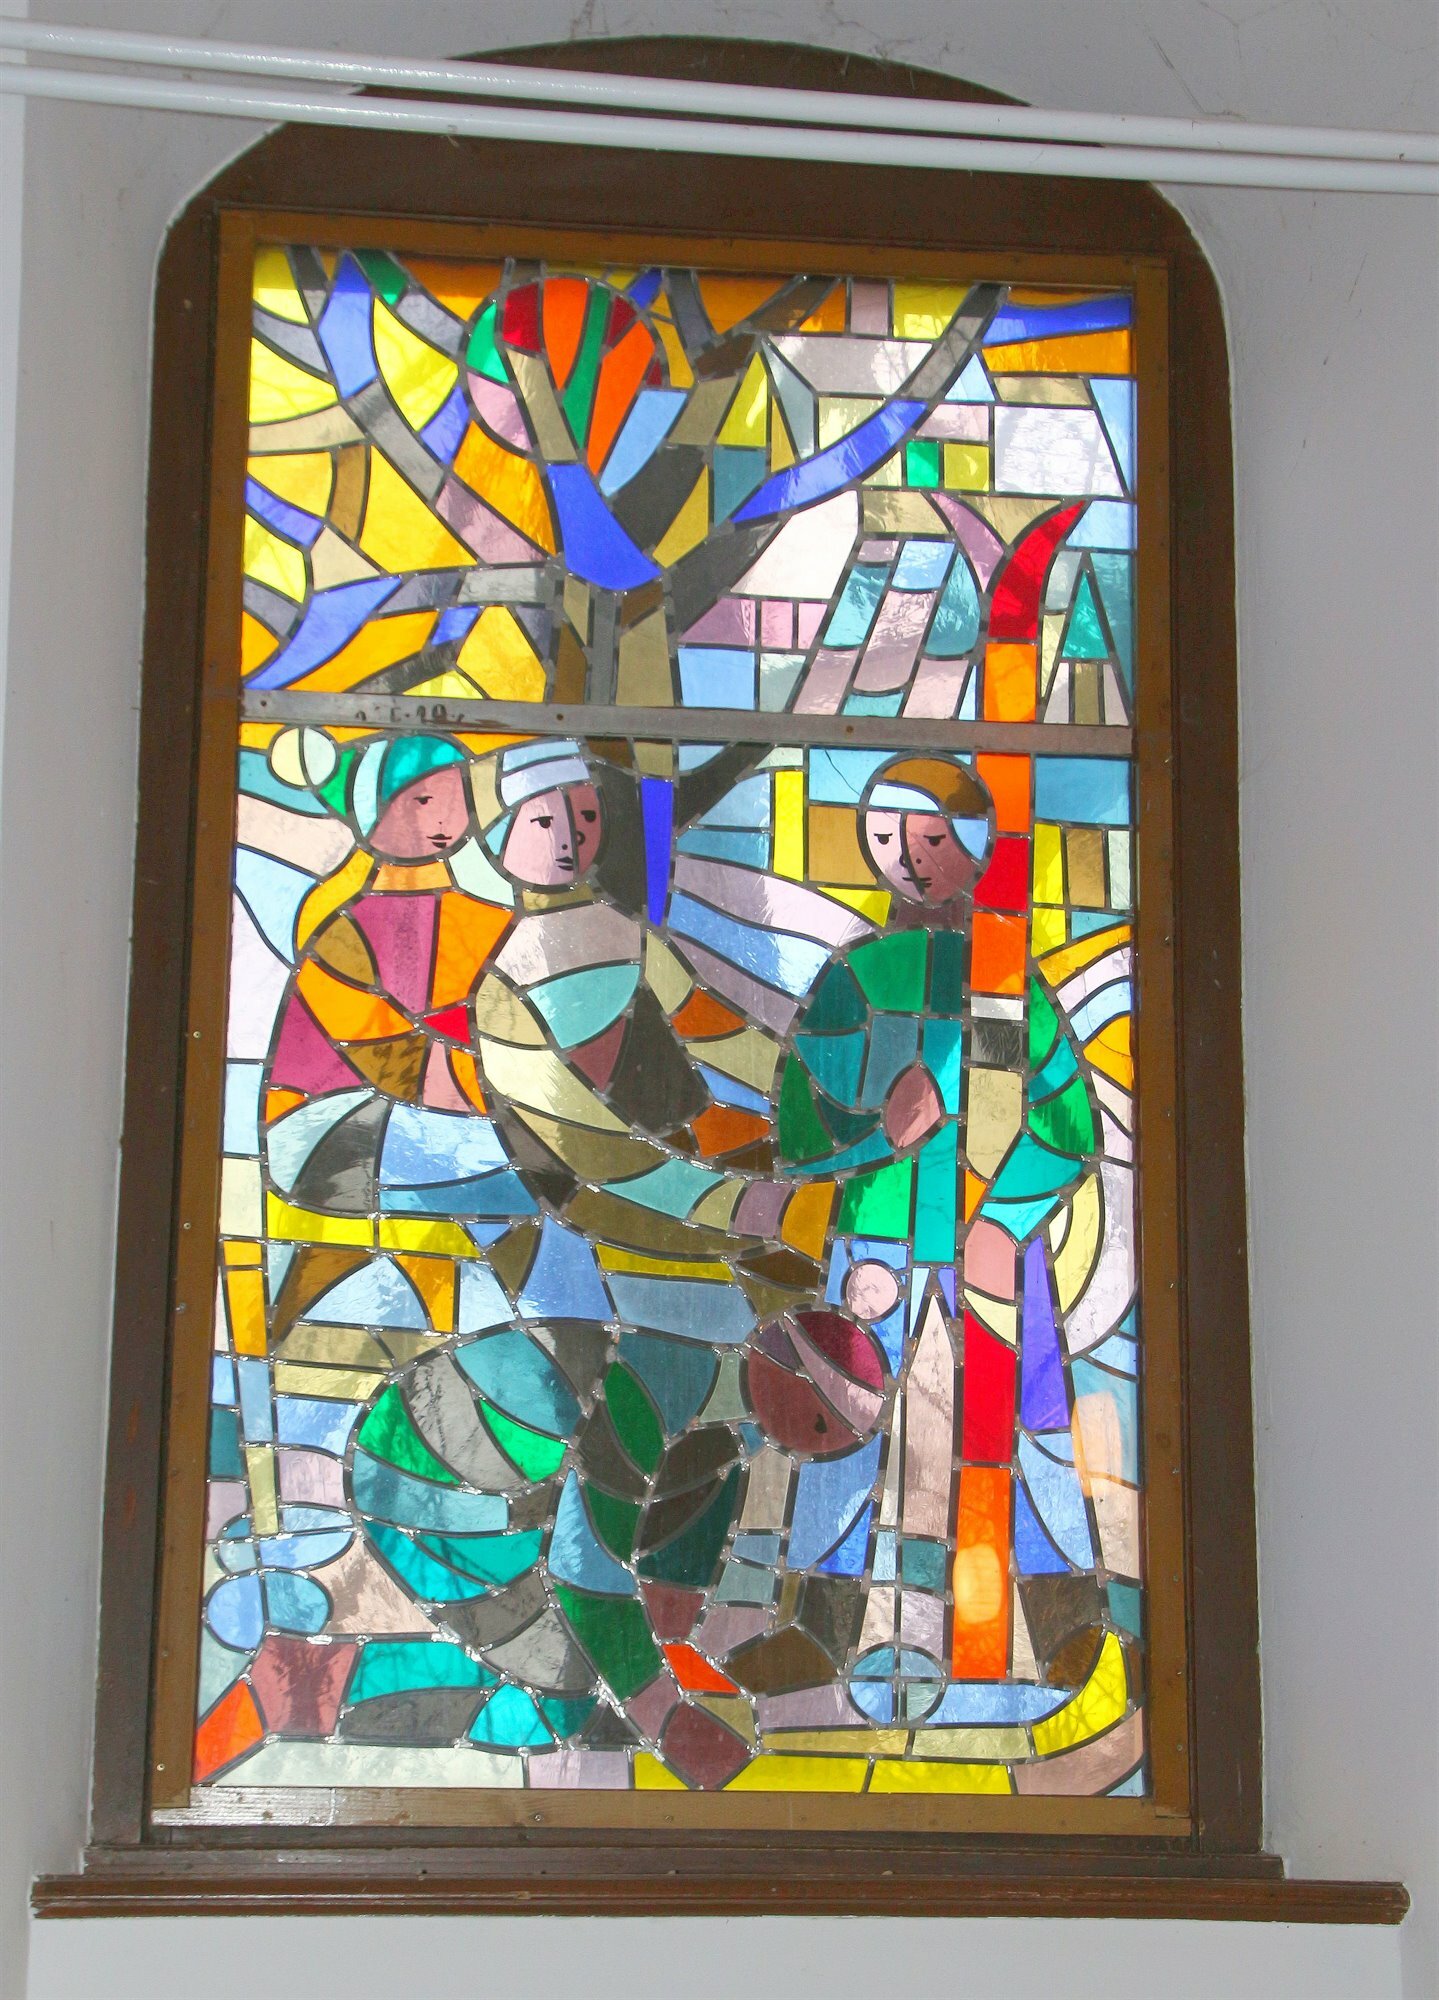 Fenster der Kapelle sind zu farbenfroh - Landkreis Meißen - WochenKurier